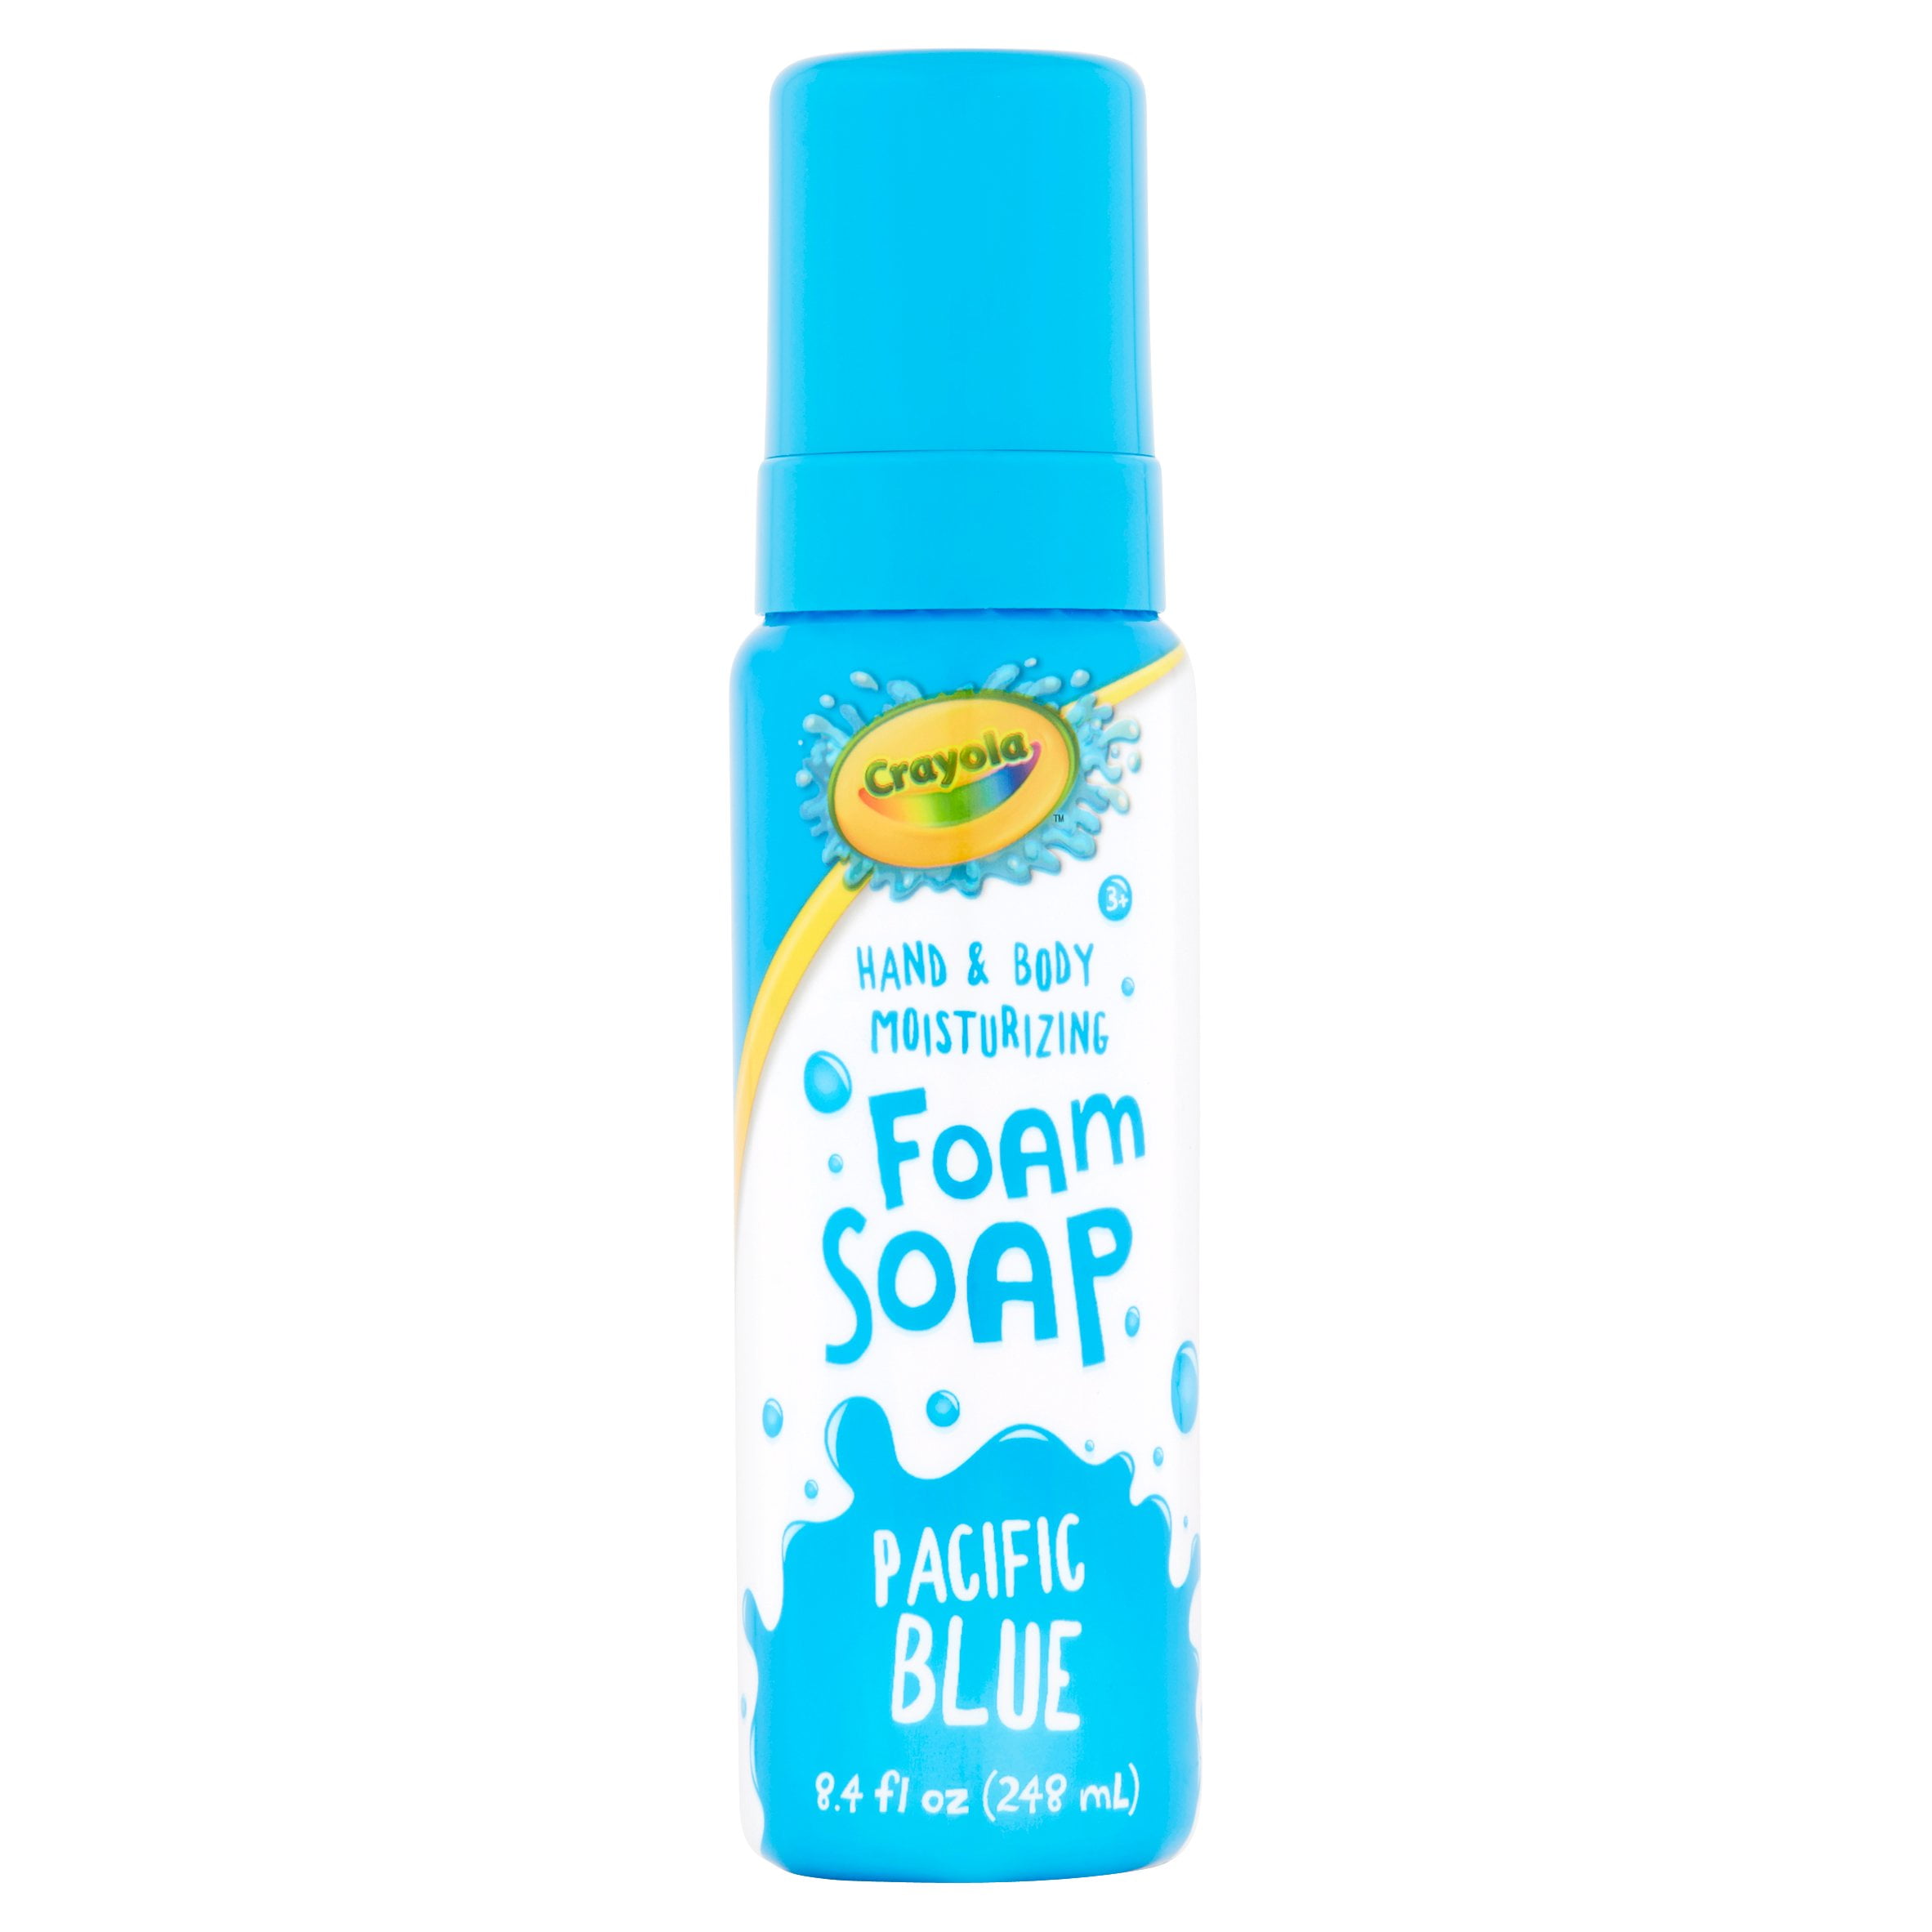 Crayola Pacific Blue Foam Soap Age 3+, 8.4 fl oz 